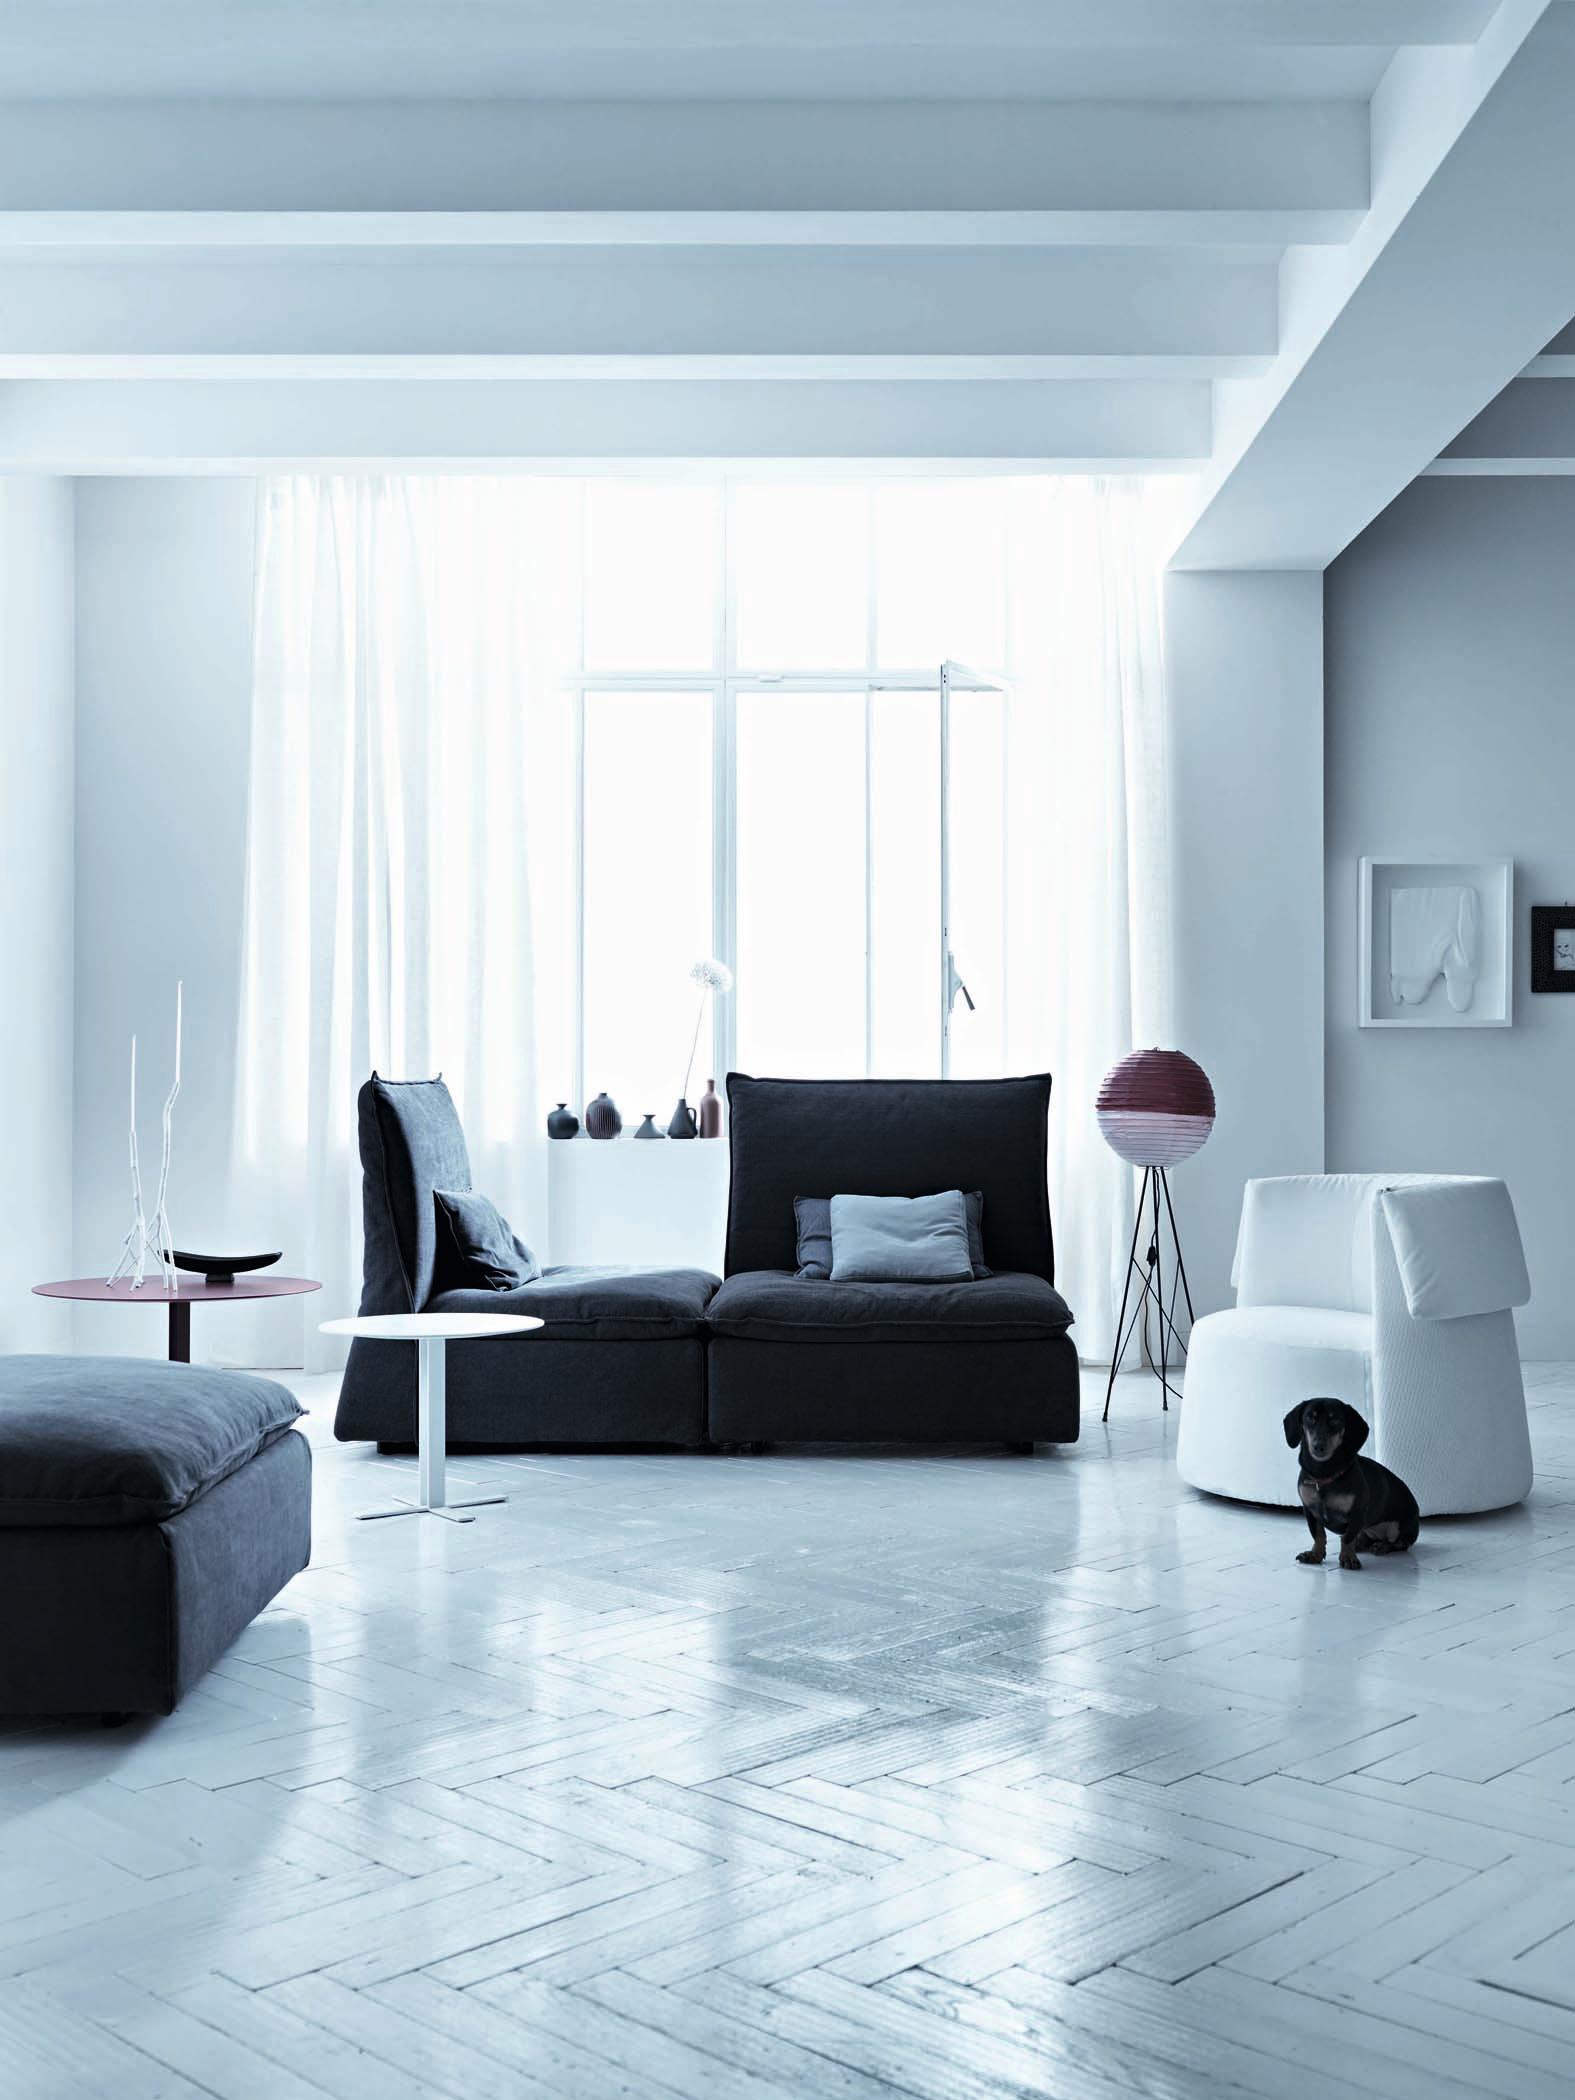 Sessel in Weiß und Grau #couchtisch #beistelltisch #hocker #sessel #vorhang #sofa #grauessofa #weißercouchtisch #grauersessel ©Saba Italia